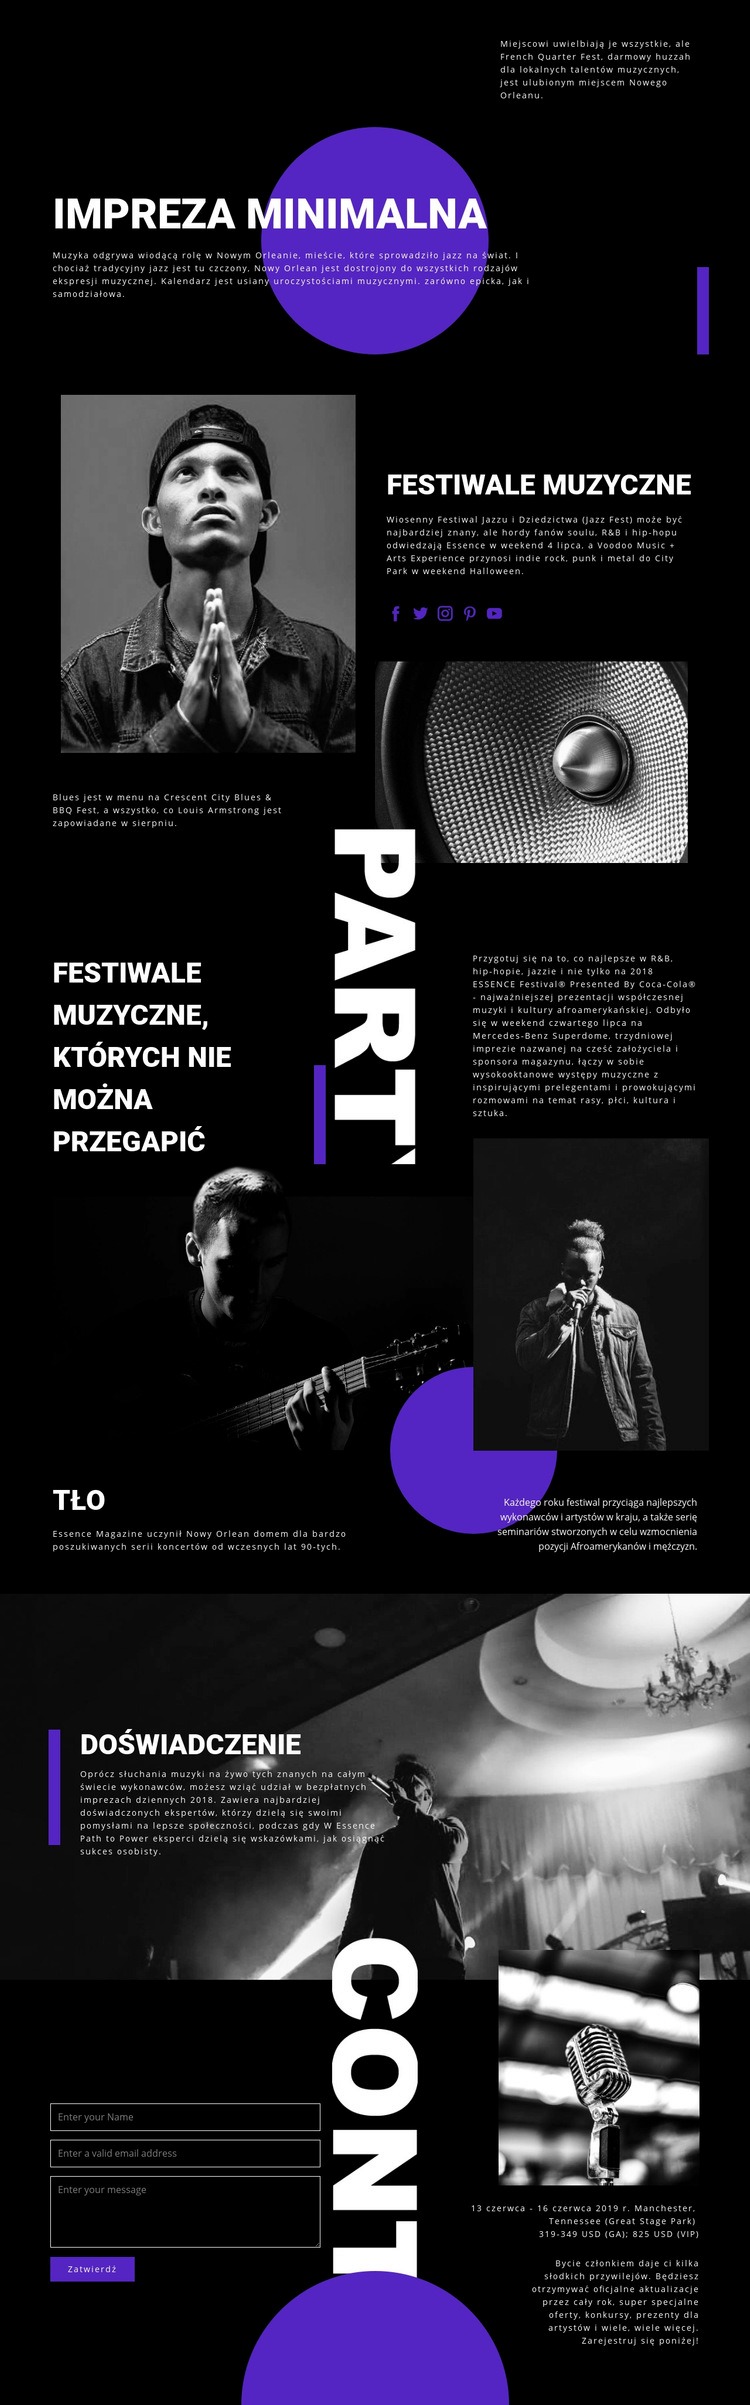 Festiwal Muzyczny Wstęp